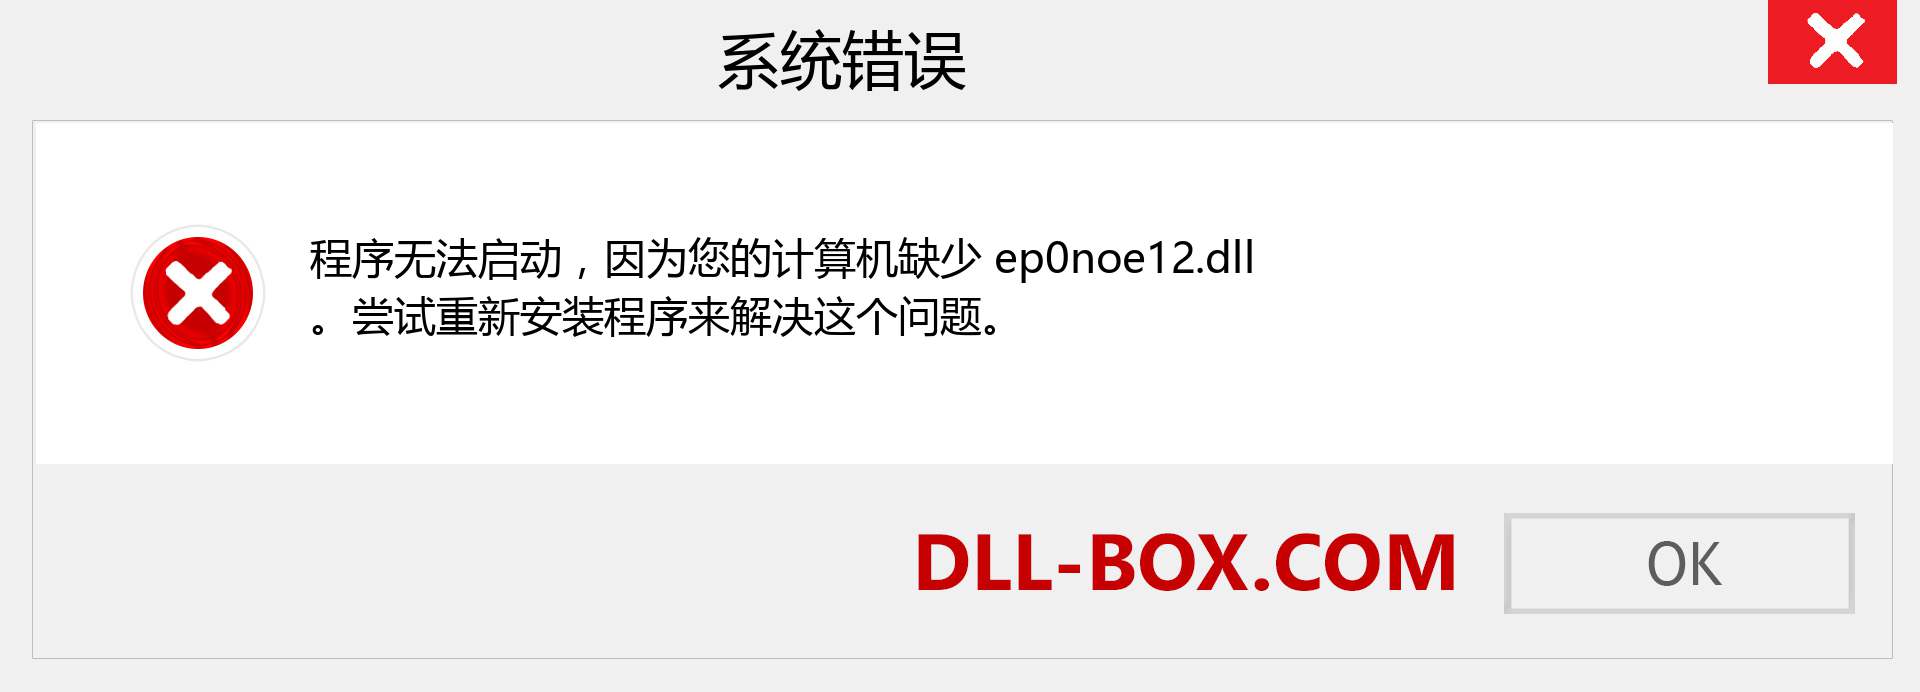 ep0noe12.dll 文件丢失？。 适用于 Windows 7、8、10 的下载 - 修复 Windows、照片、图像上的 ep0noe12 dll 丢失错误